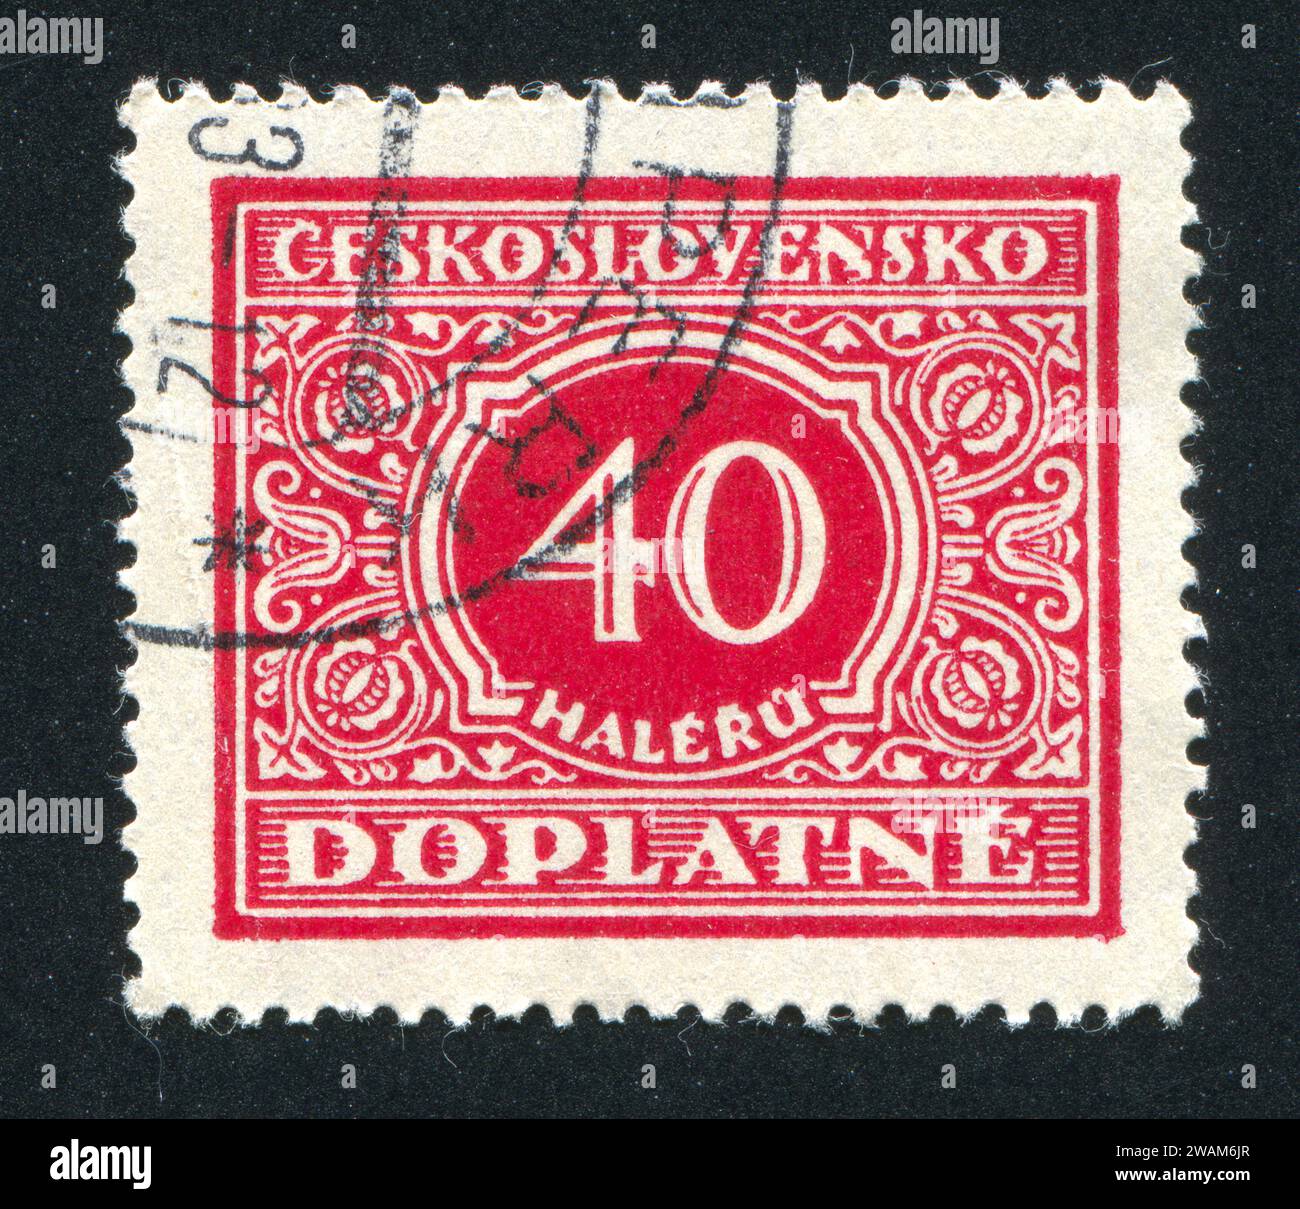 TCHÉCOSLOVAQUIE - CIRCA 1928 : timbre imprimé par la Tchécoslovaquie, montre Postage due, circa 1928 Banque D'Images